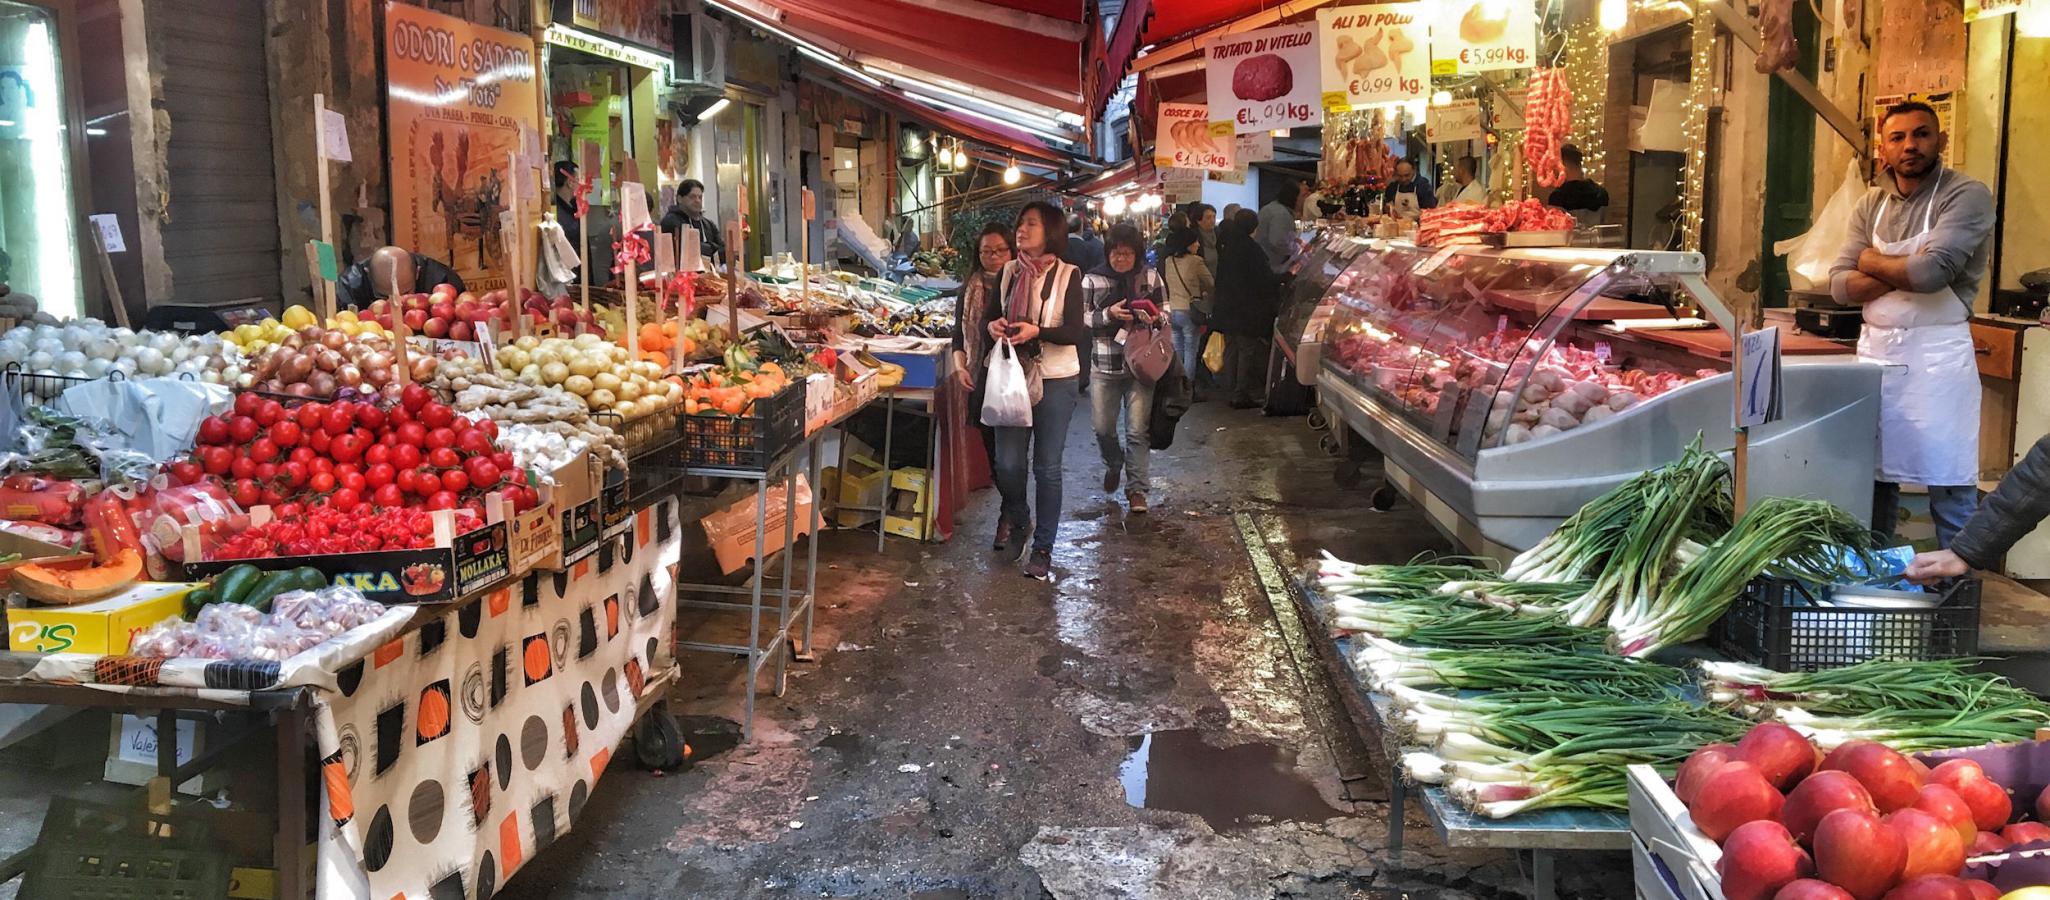 Street Market Palermo